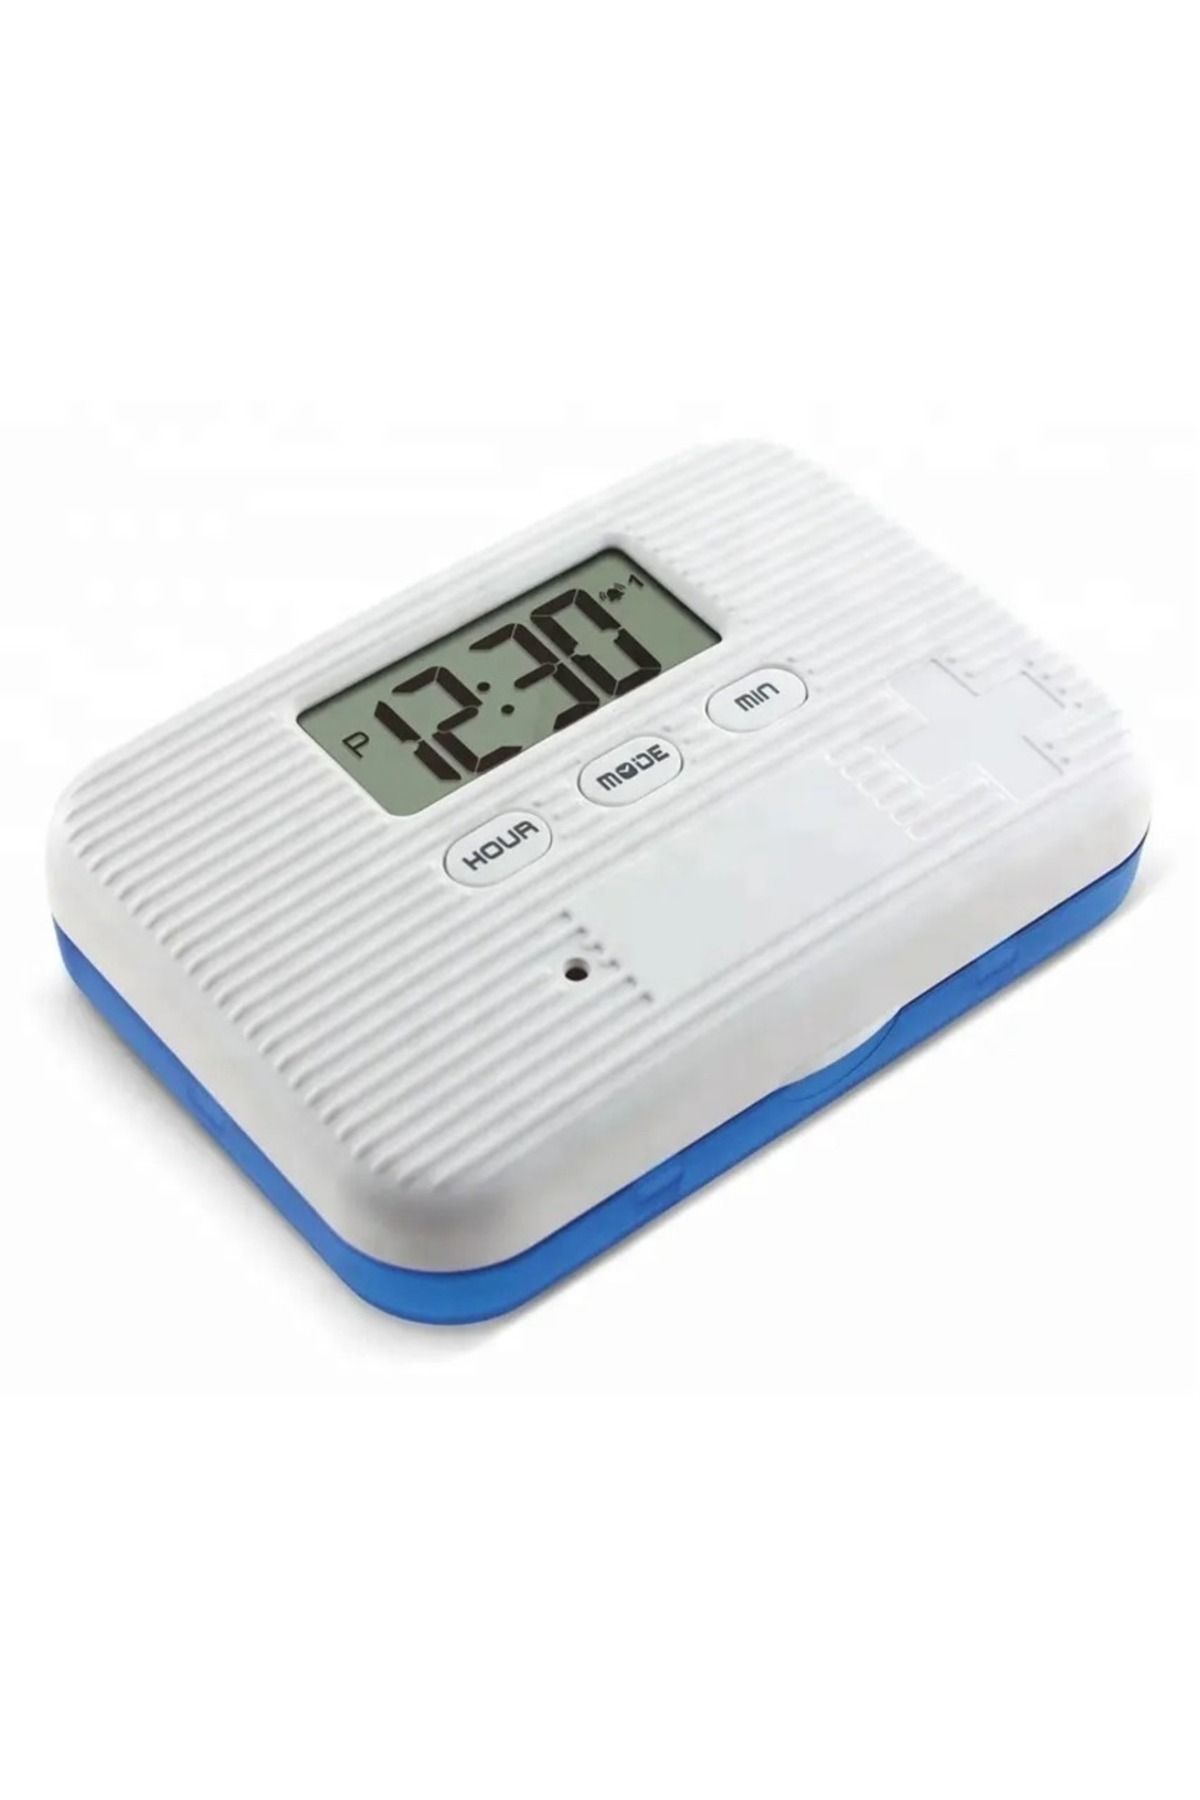 gaman Öğrenciler için 5x Alarmlı / Saatli Kronometre ( Geri sayım cihazı ) + İlaç Kutusu (Vitamin Kutusu)